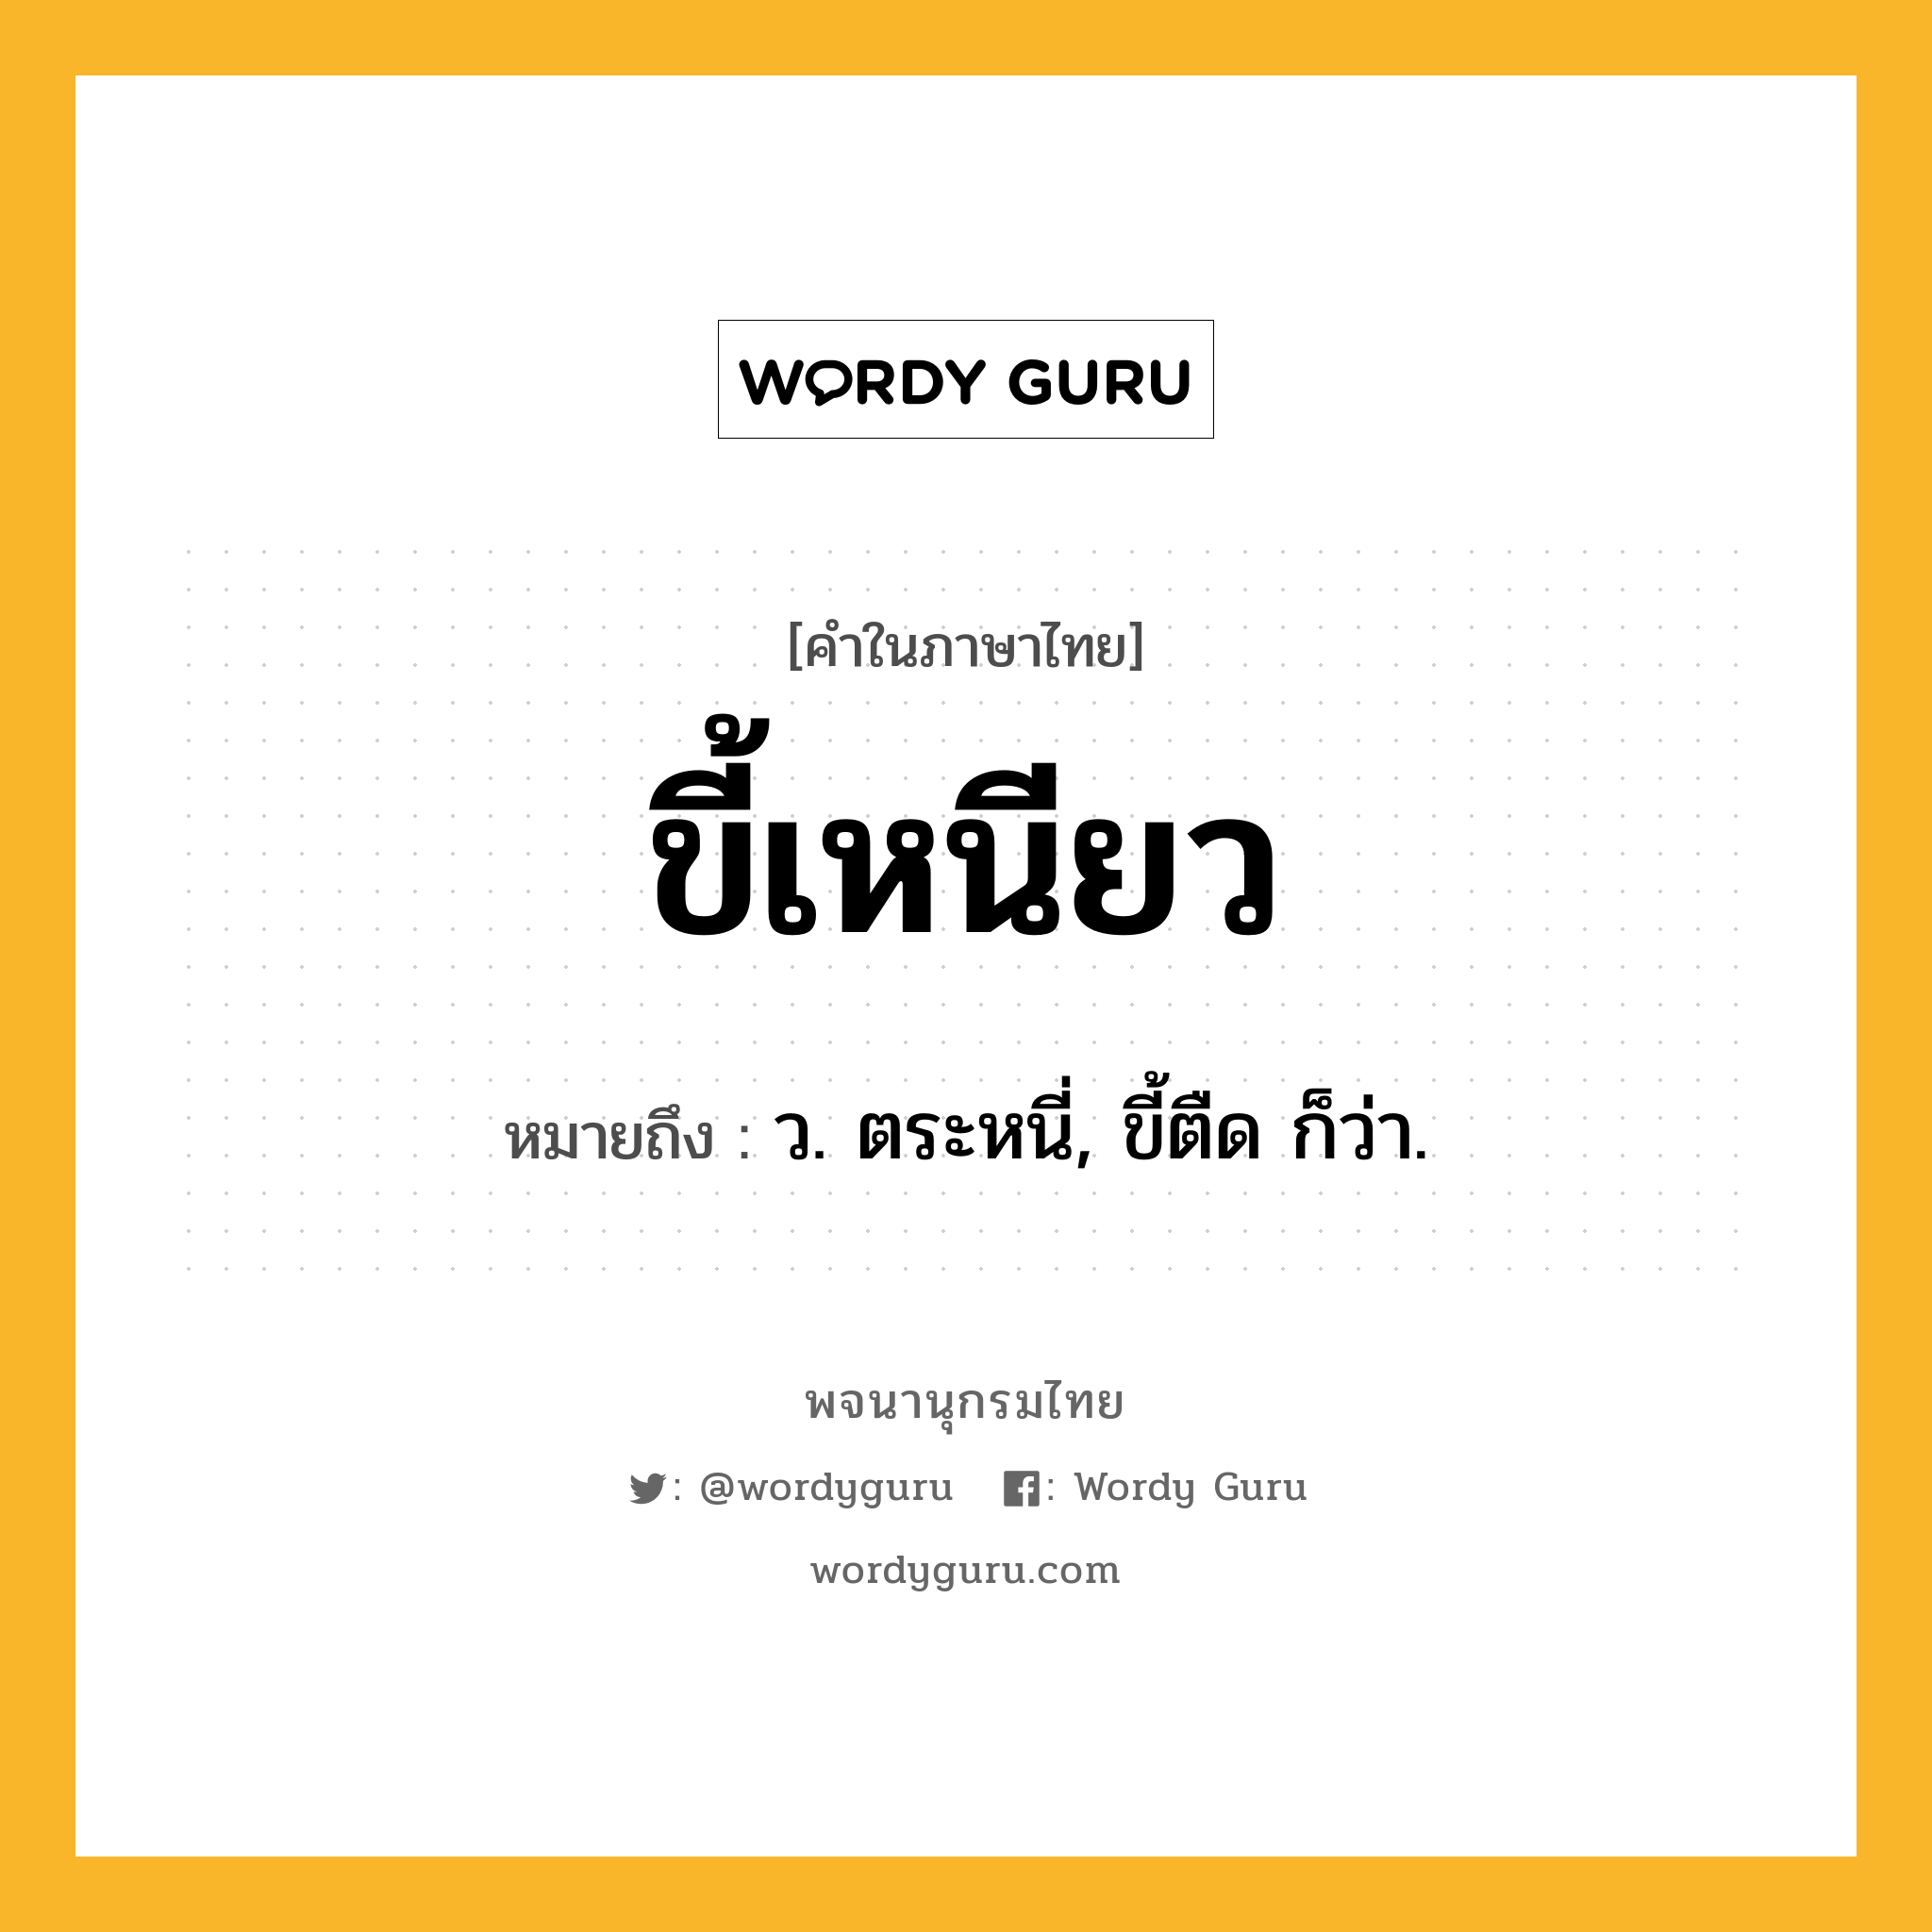 ขี้เหนียว ความหมาย หมายถึงอะไร?, คำในภาษาไทย ขี้เหนียว หมายถึง ว. ตระหนี่, ขี้ตืด ก็ว่า.